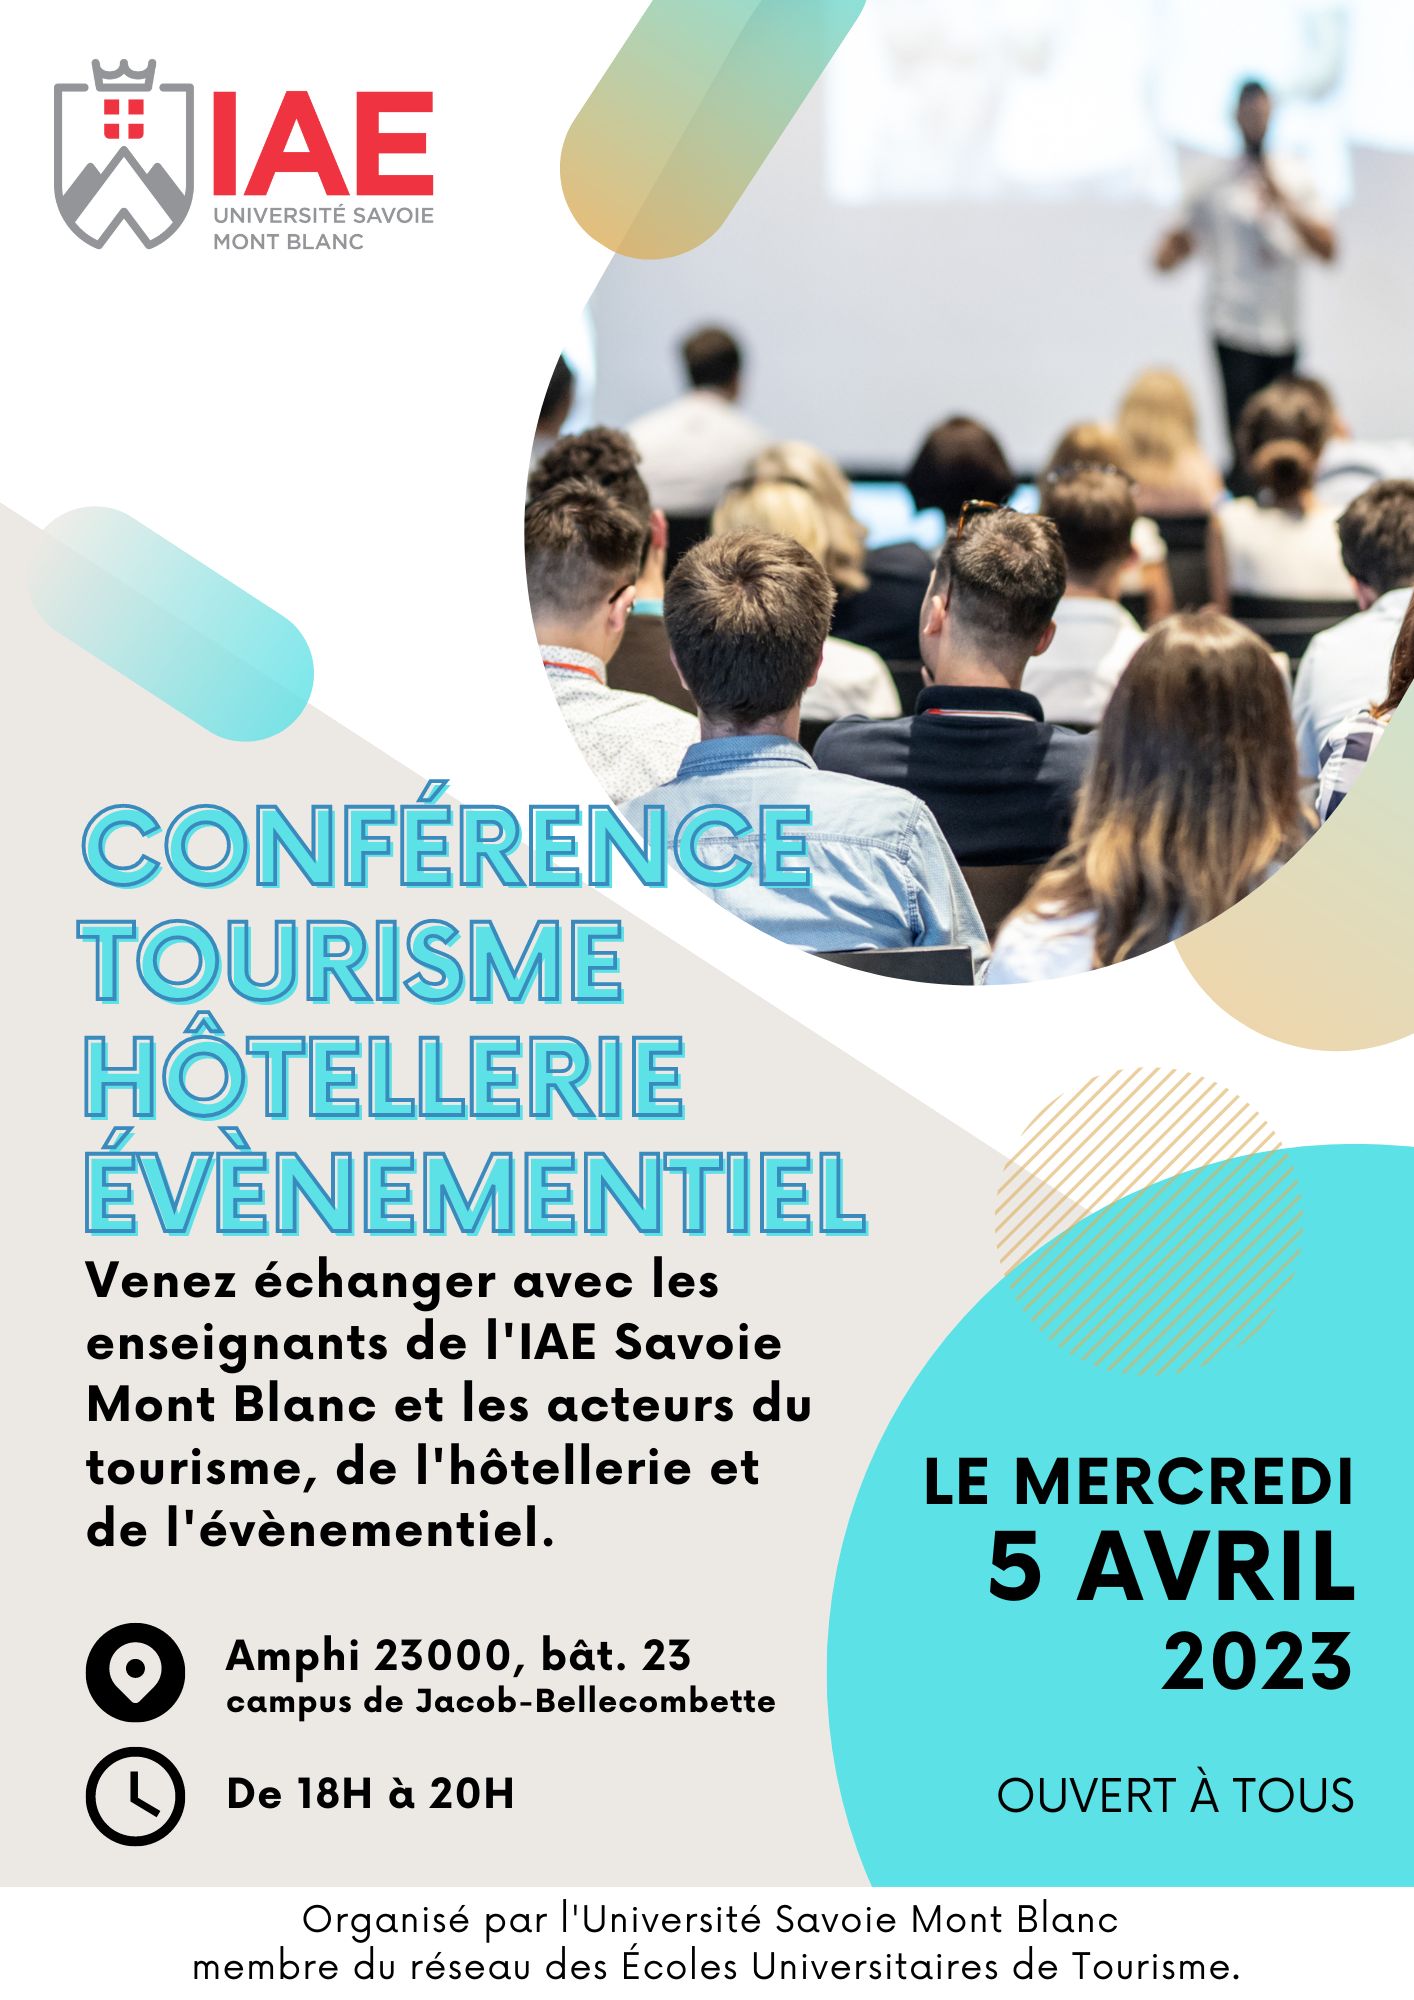 Conférence sur Les métiers du tourisme, de l’hôtellerie et de l’événementiel